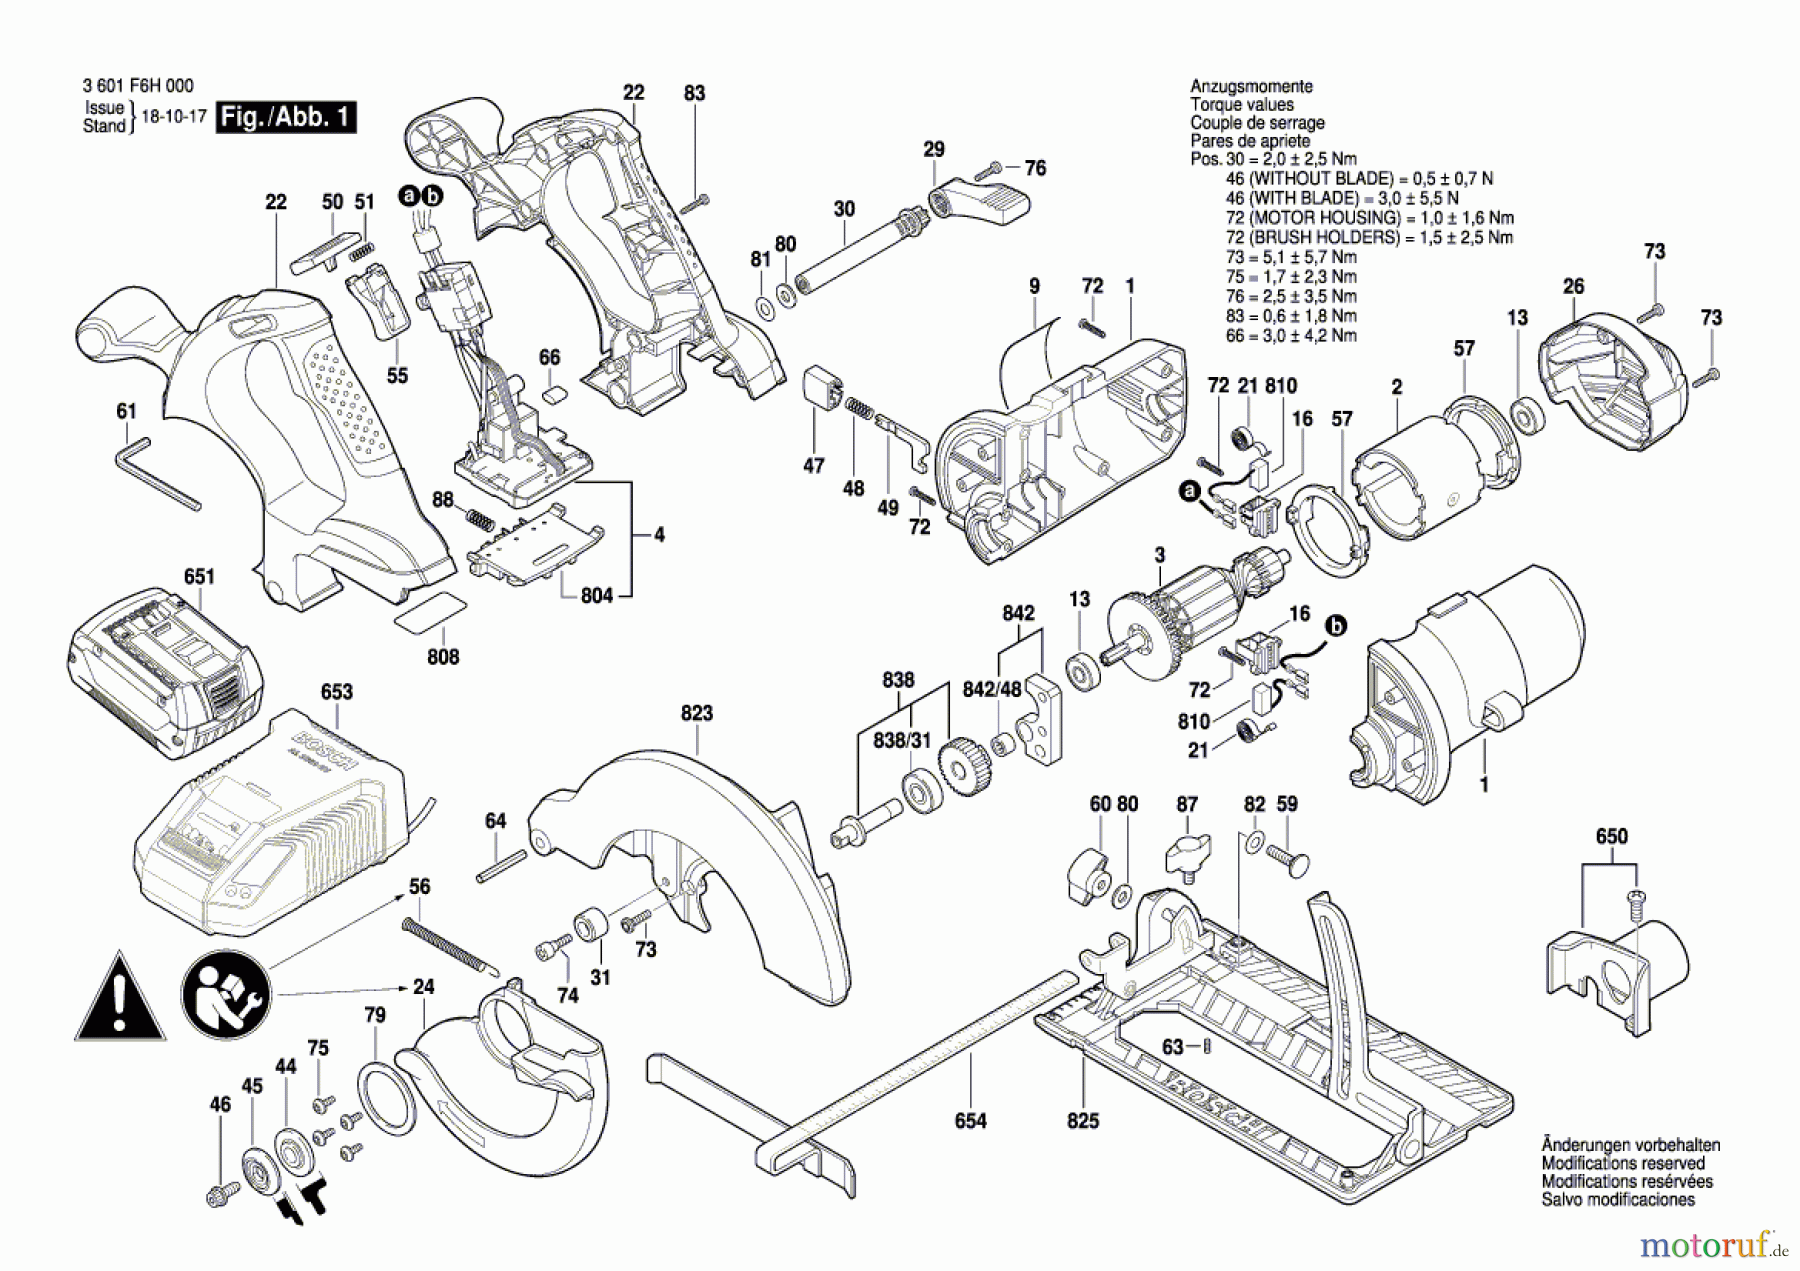  Bosch Akku Werkzeug Akku-Kreissäge GKS 18V-LI Seite 1